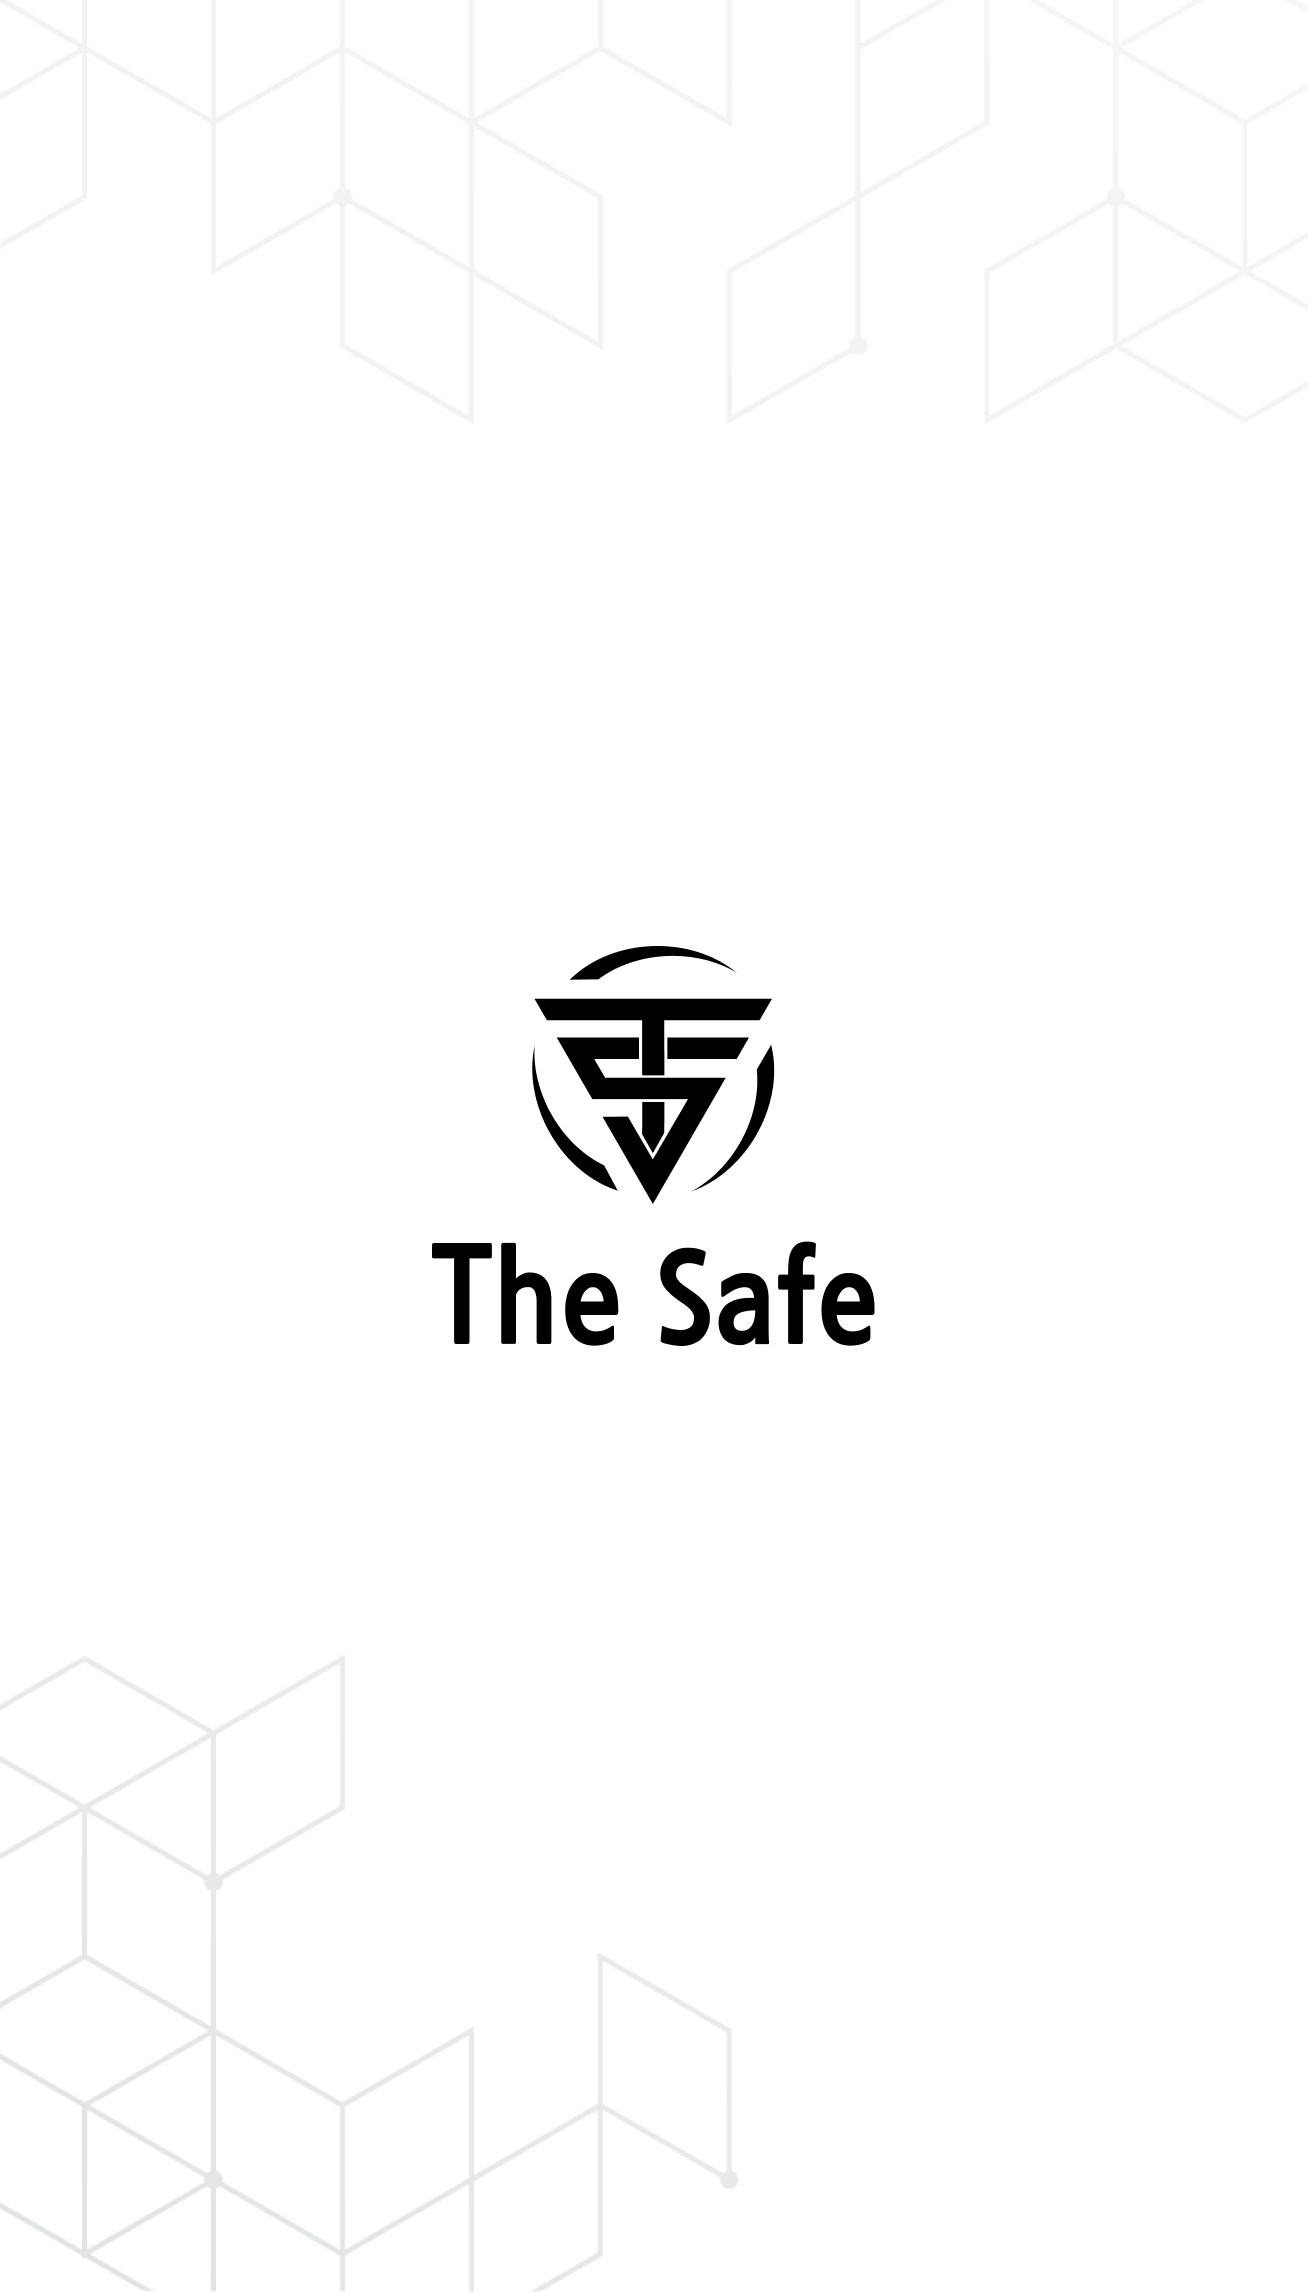 SEO-암호화폐 플랫폼 The safe